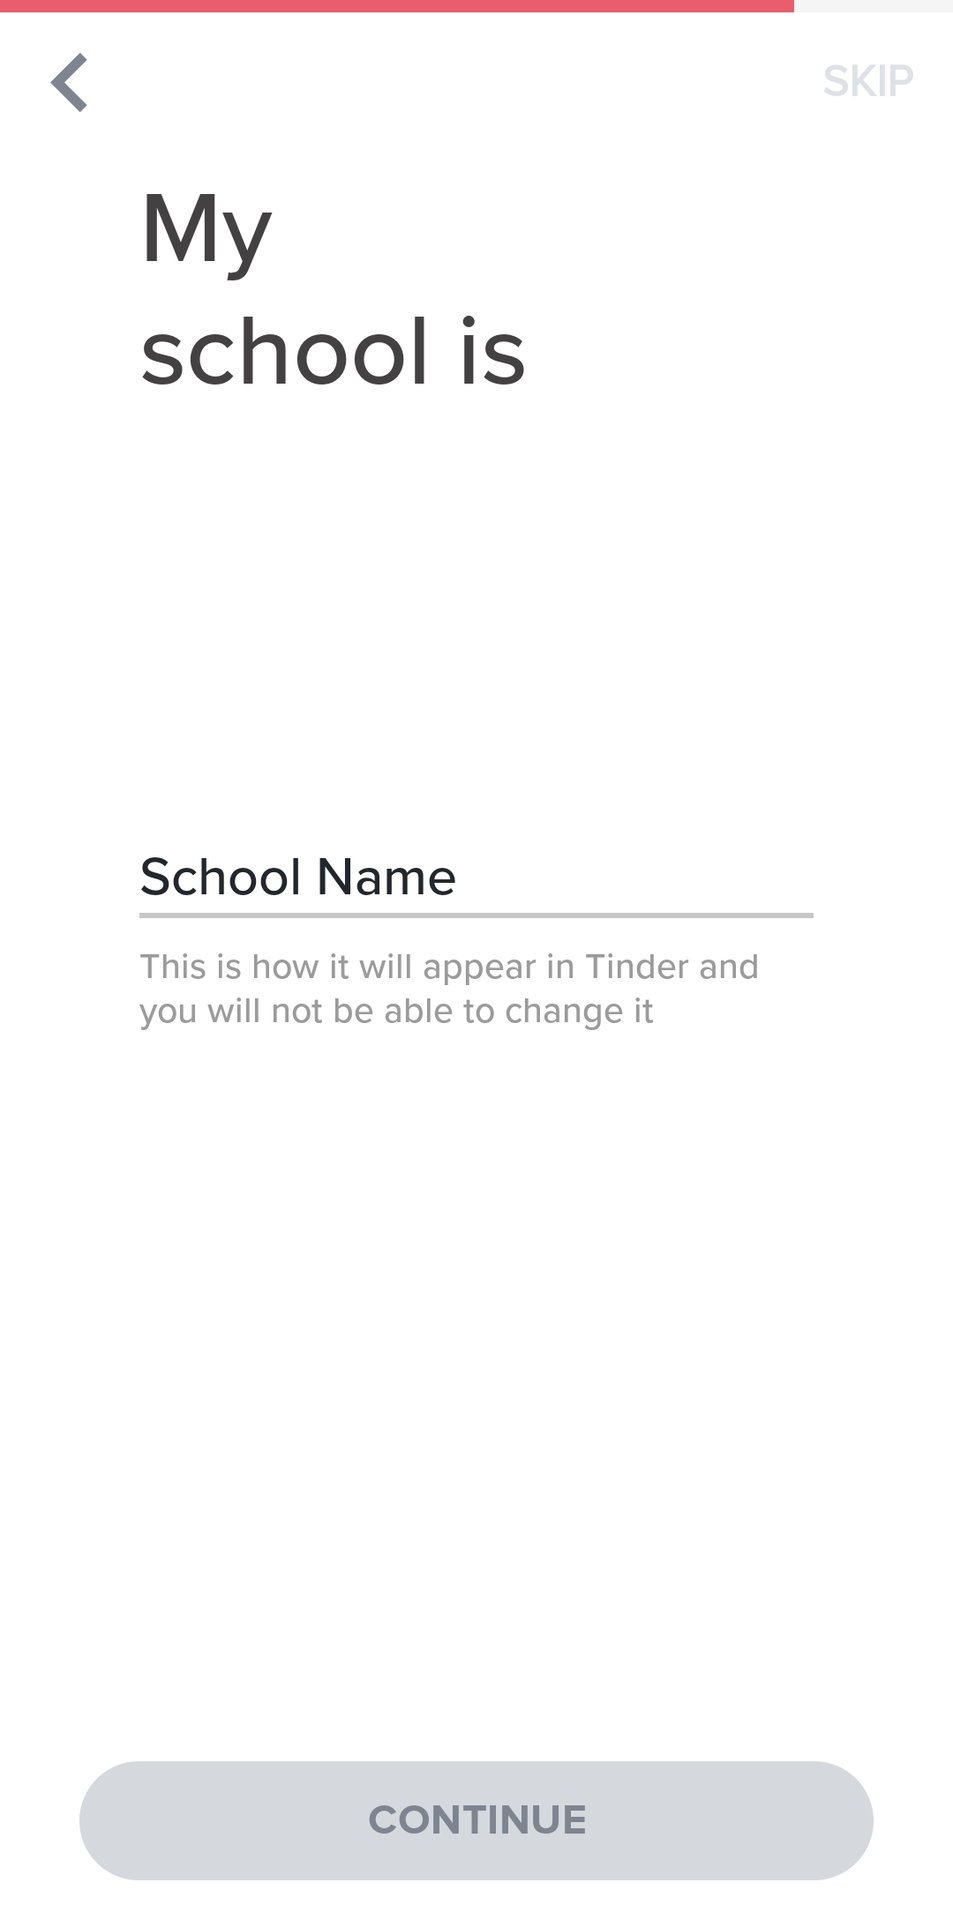 9 Enter your school information on Tinder